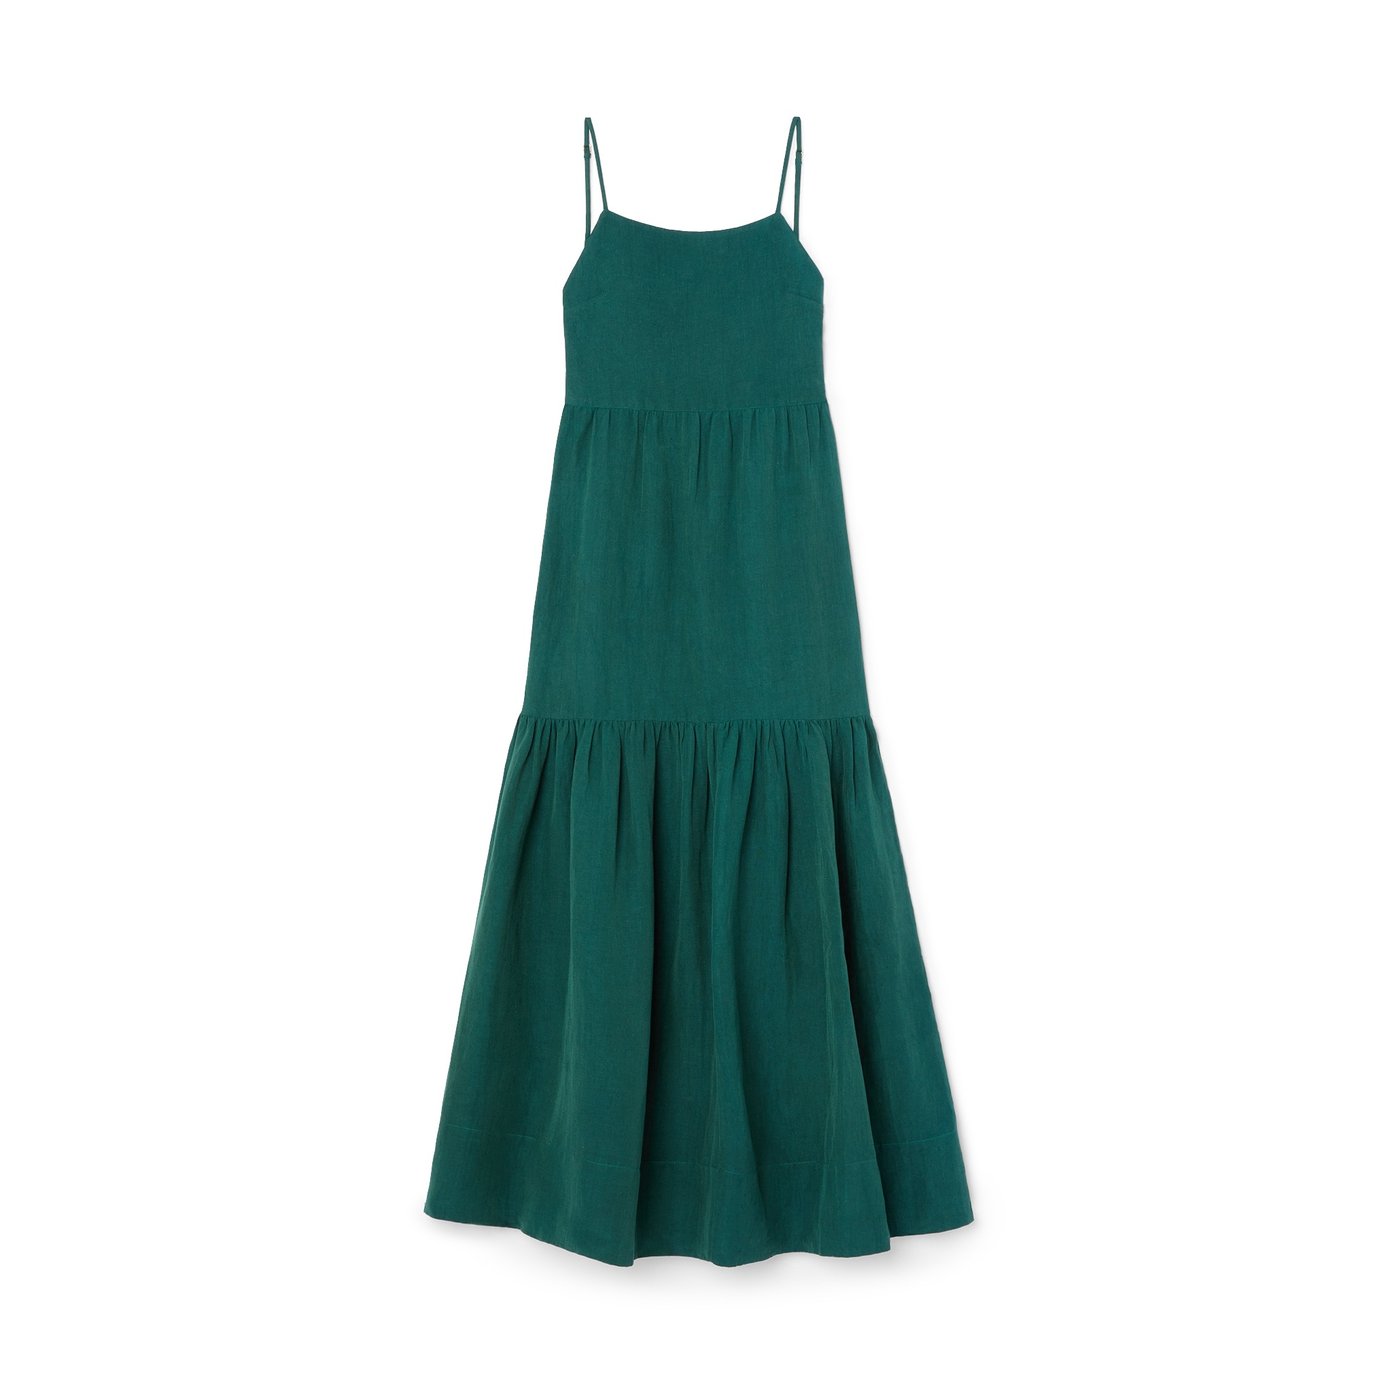 Posse Ellie Dress in Evergreen, Large | Women